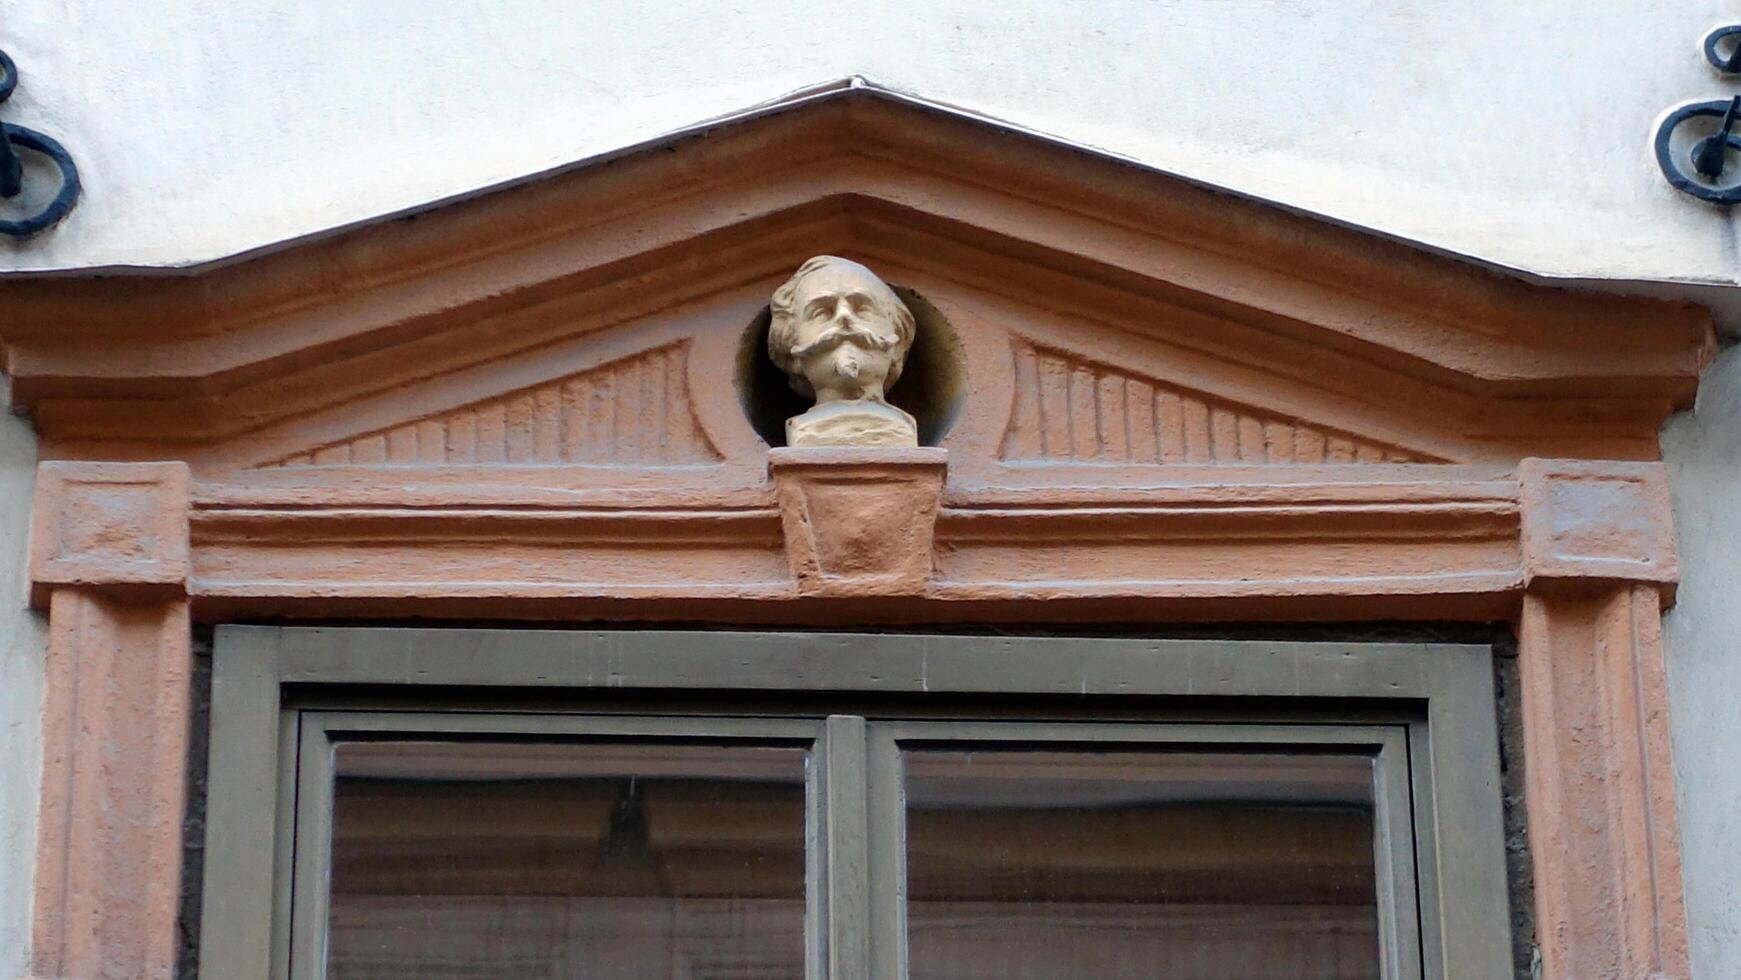 Fasad av en historisk byggnad i central stockholm. på de fönster du kan ser de huvuden av tecken från italiensk historia. foto